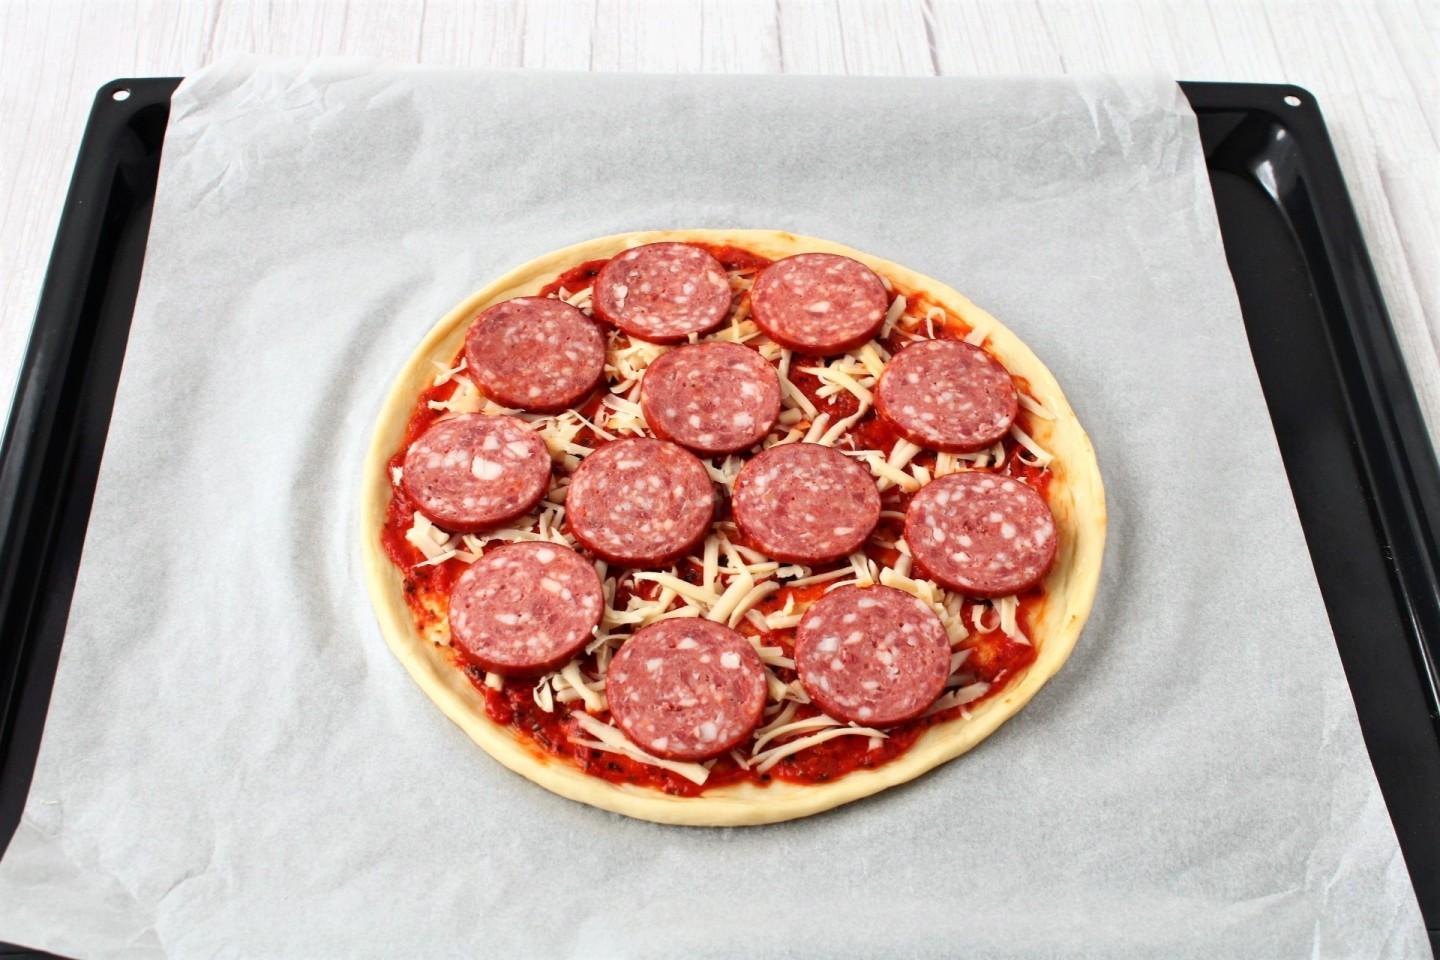 приготовление пиццы с колбасой сыром в духовке домашних условиях фото 98